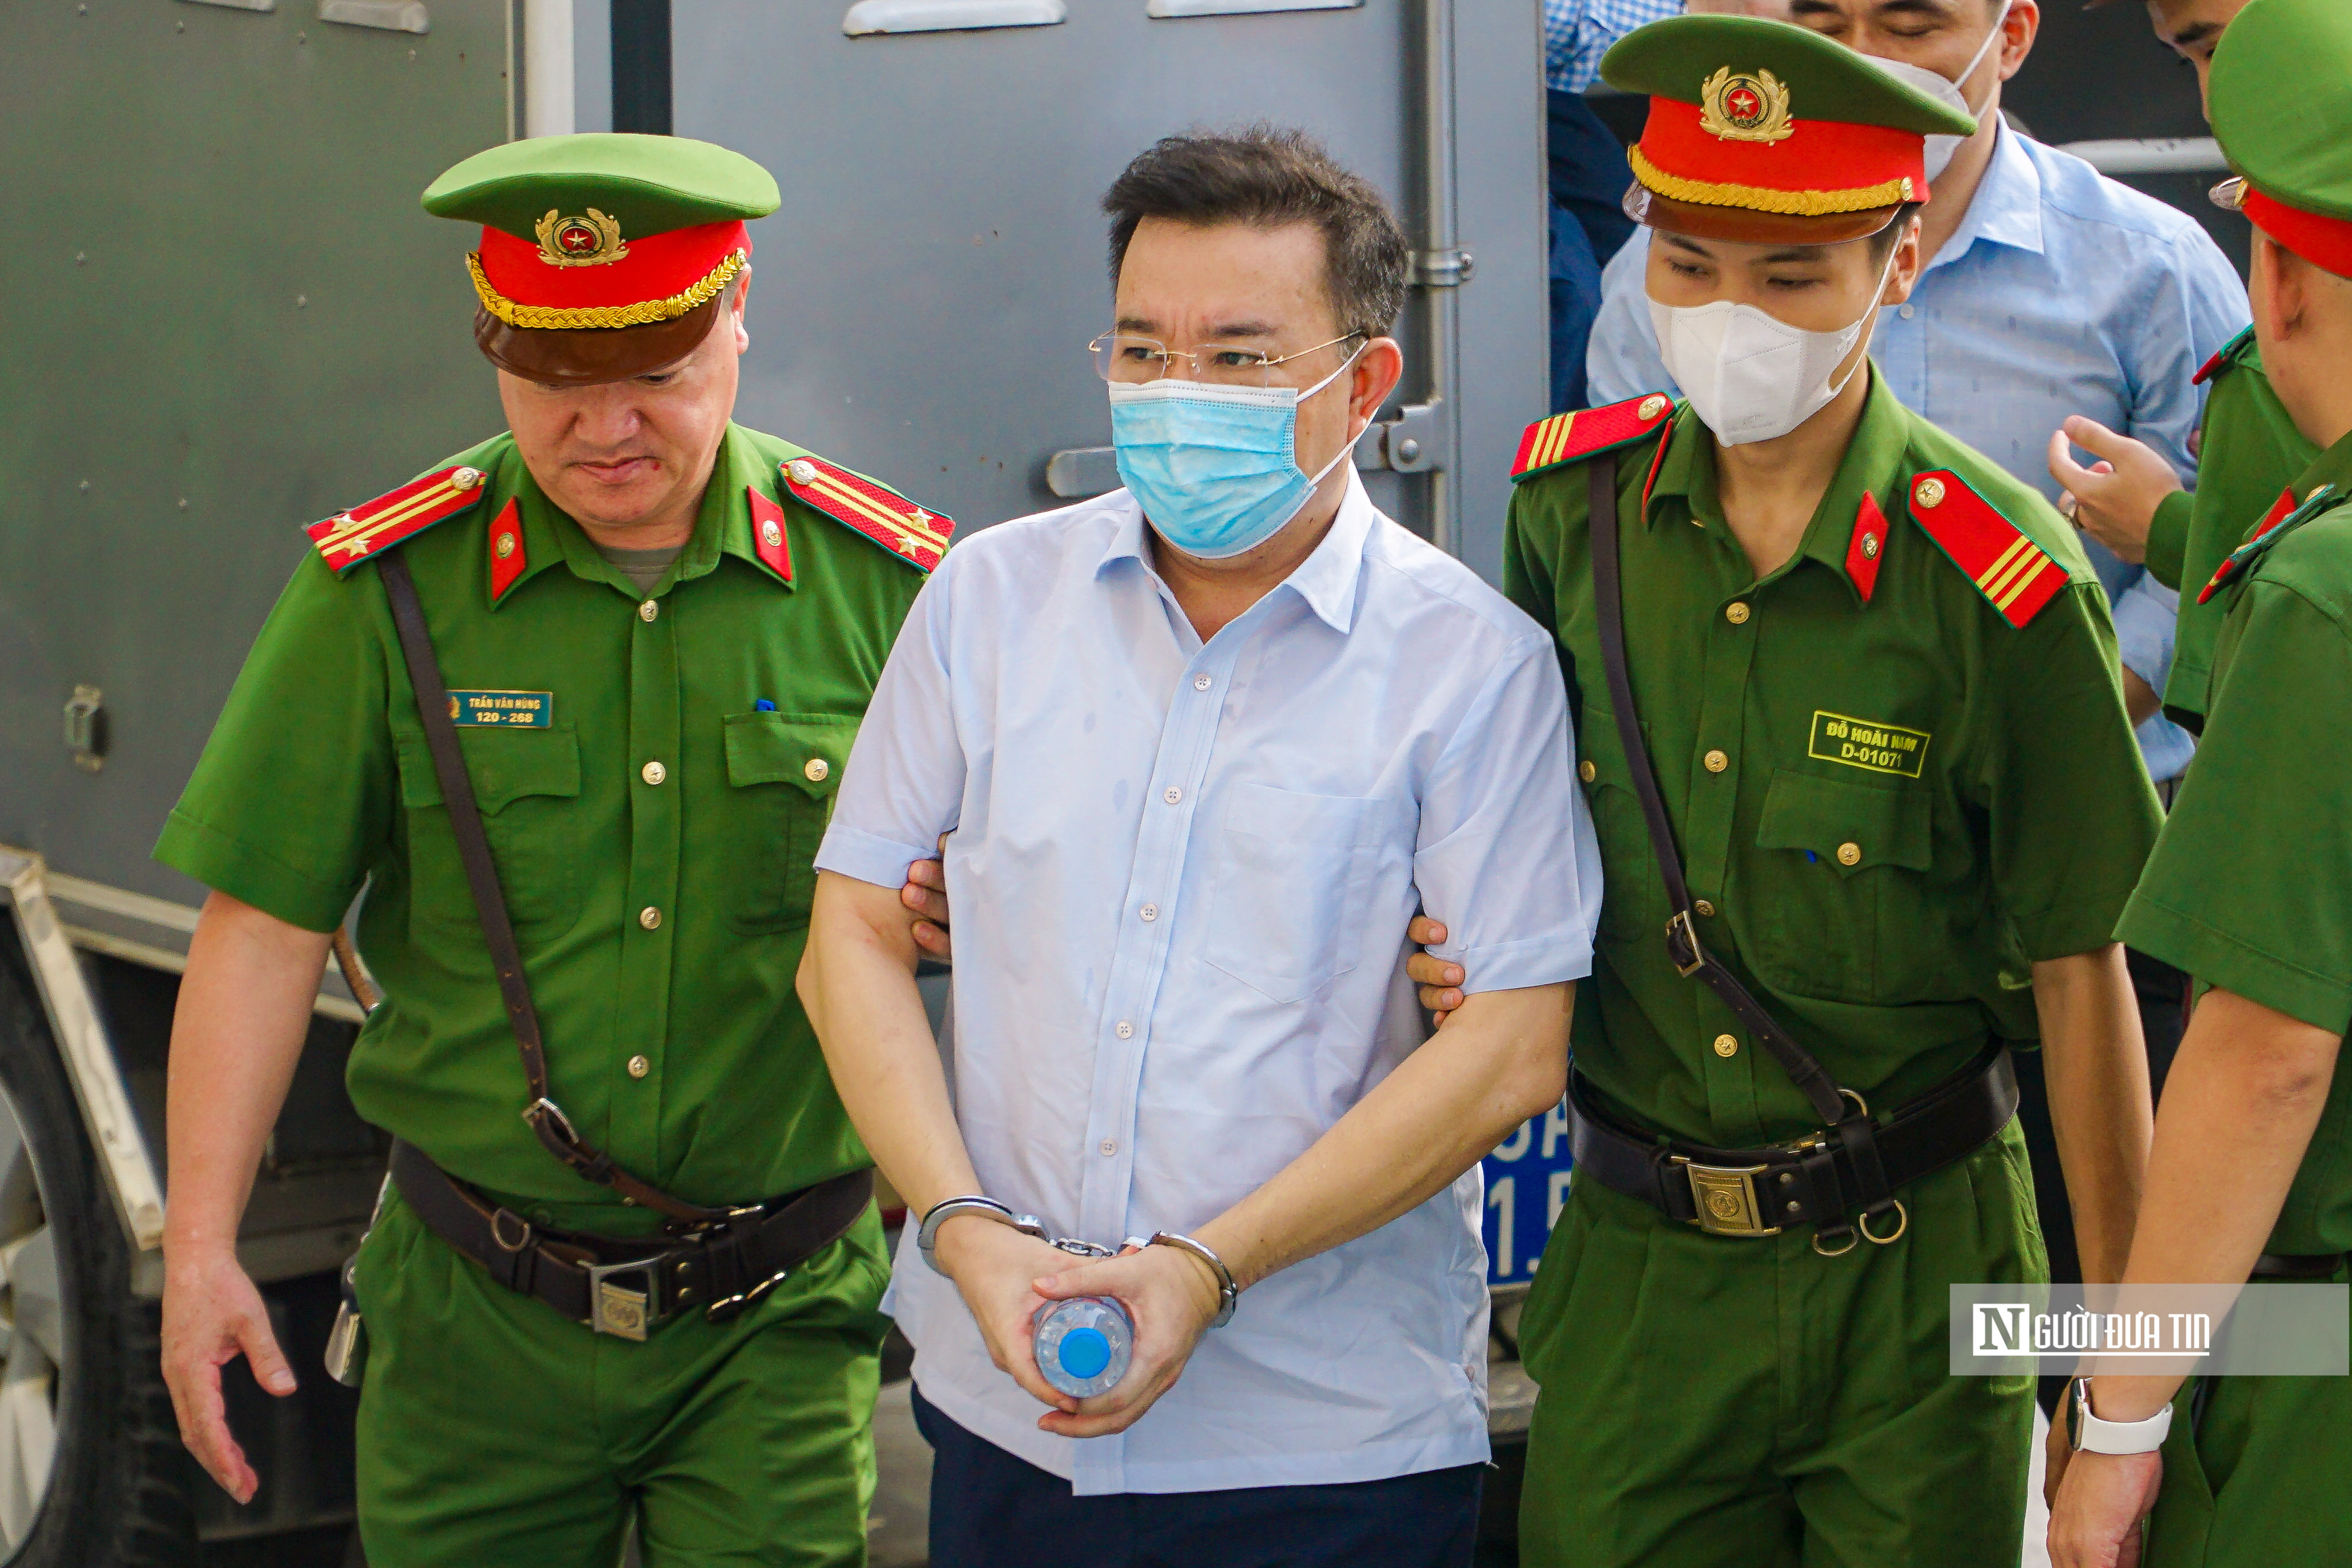 Hồ sơ điều tra - Chuyến bay giải cứu: Cựu Phó Chủ tịch Hà Nội Chử Xuân Dũng nhận án 3 năm tù giam